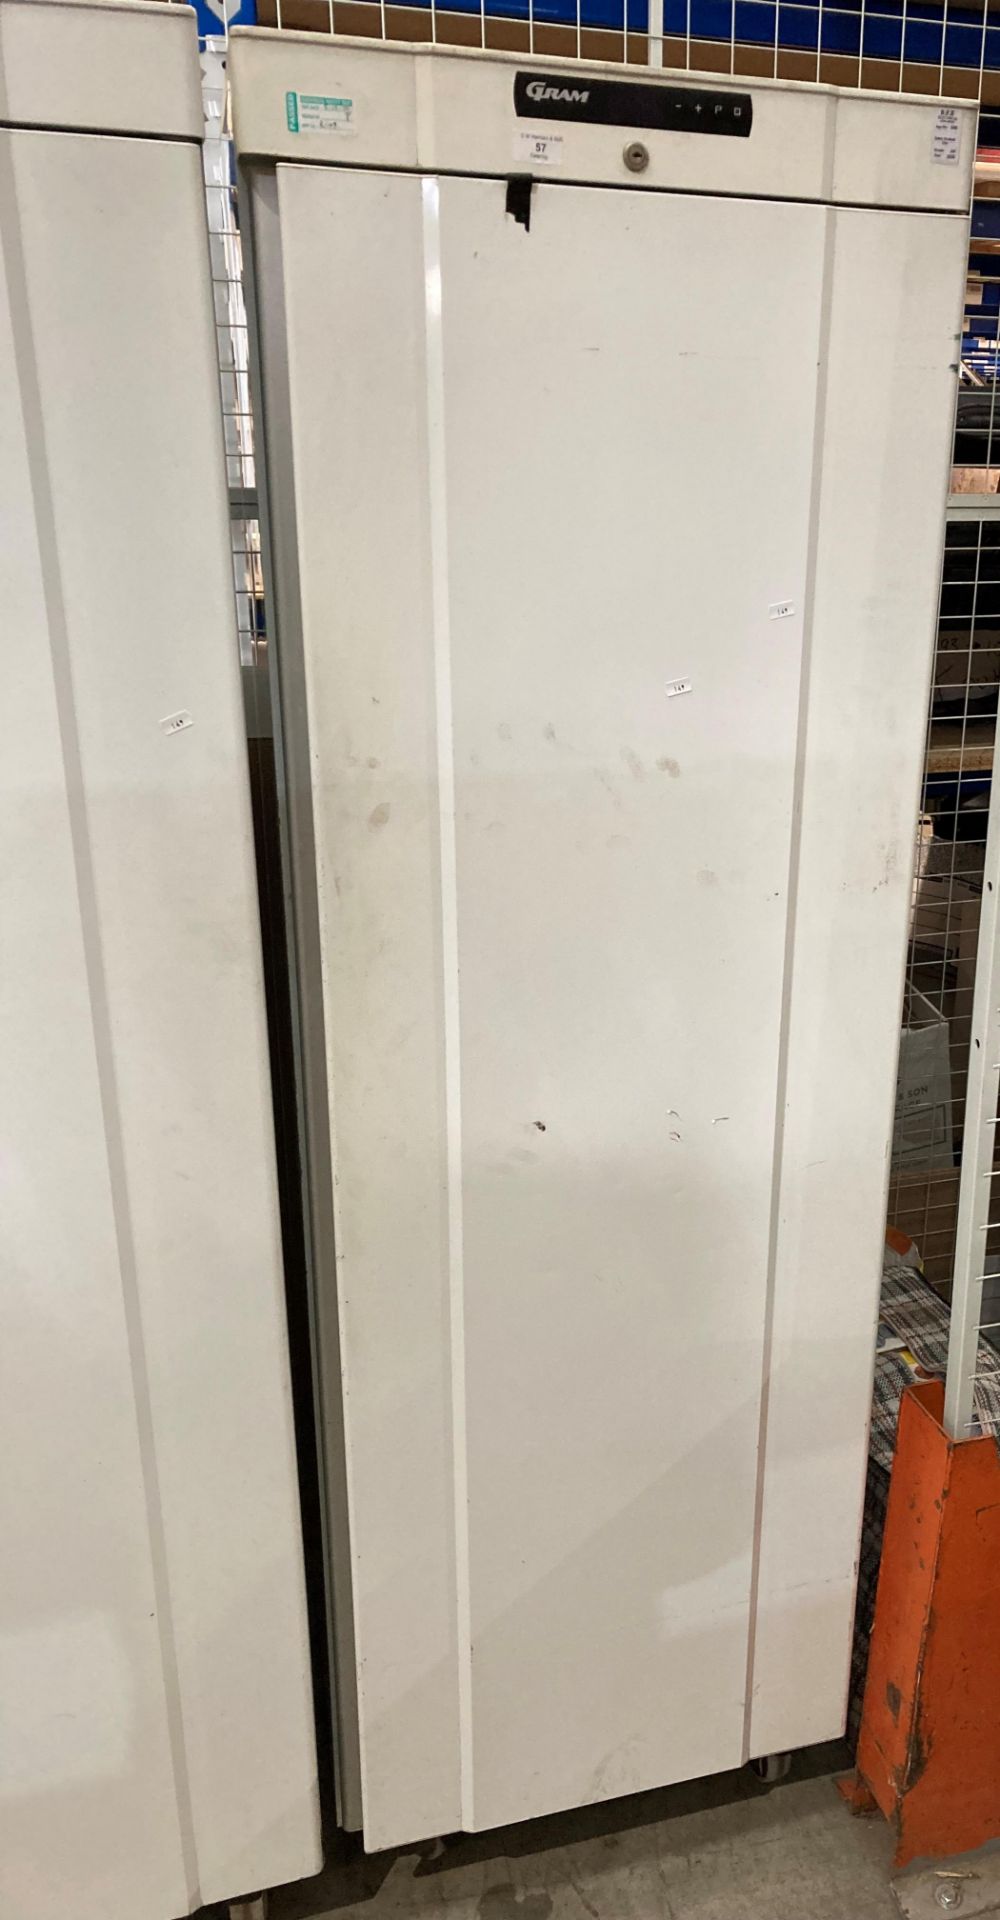 Gram upright single door freezer type K410LGC6W (no power lead) Further Information